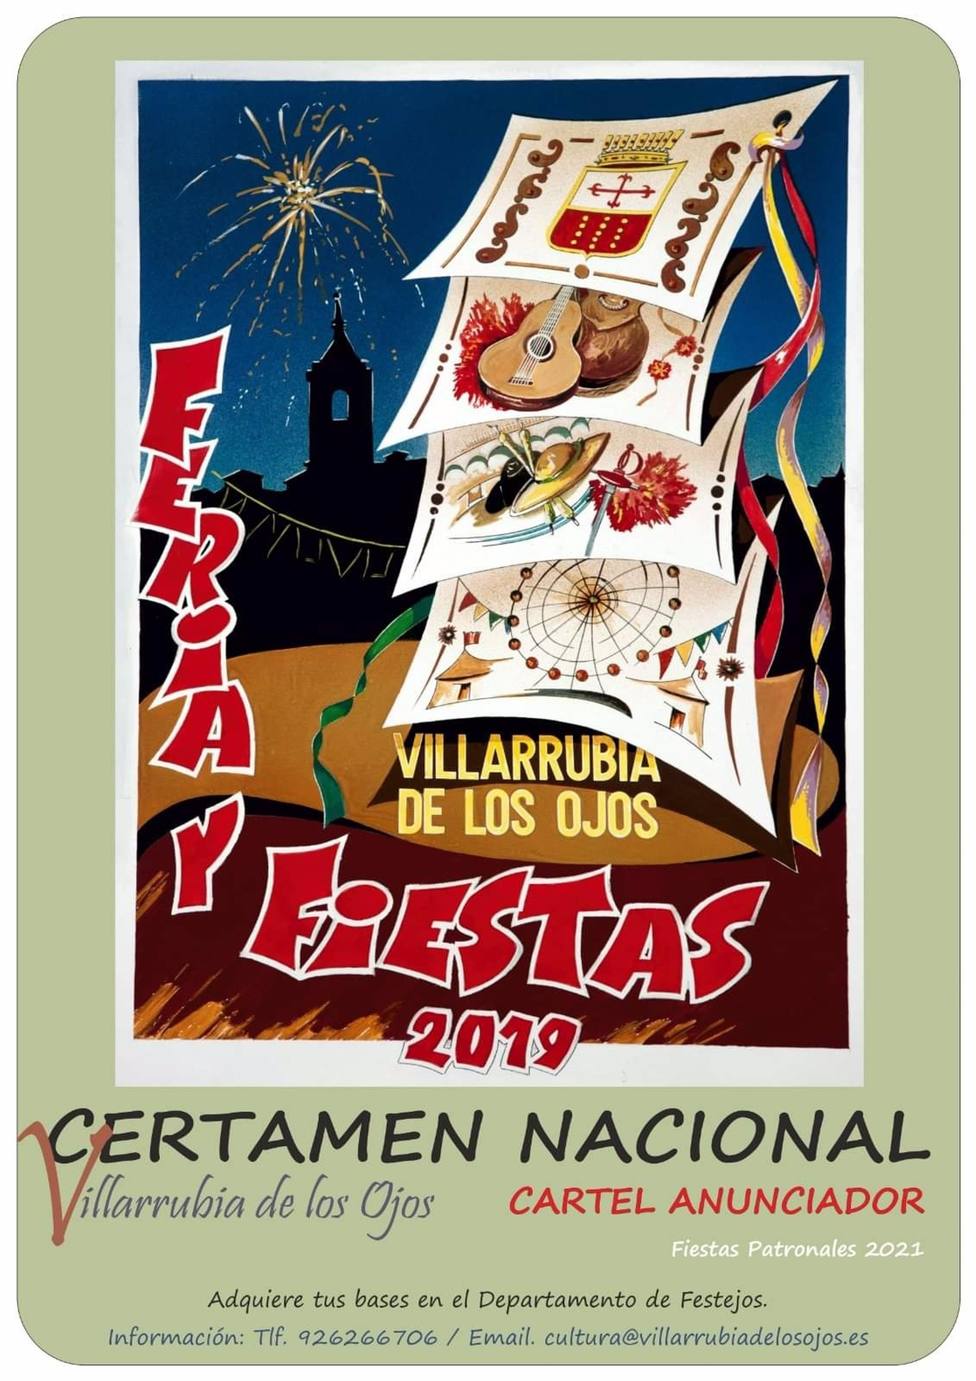 El concurso para elegir el cartel anunciador de las fiestas de Villarrubia de los Ojos incluye un premio de 400 euros